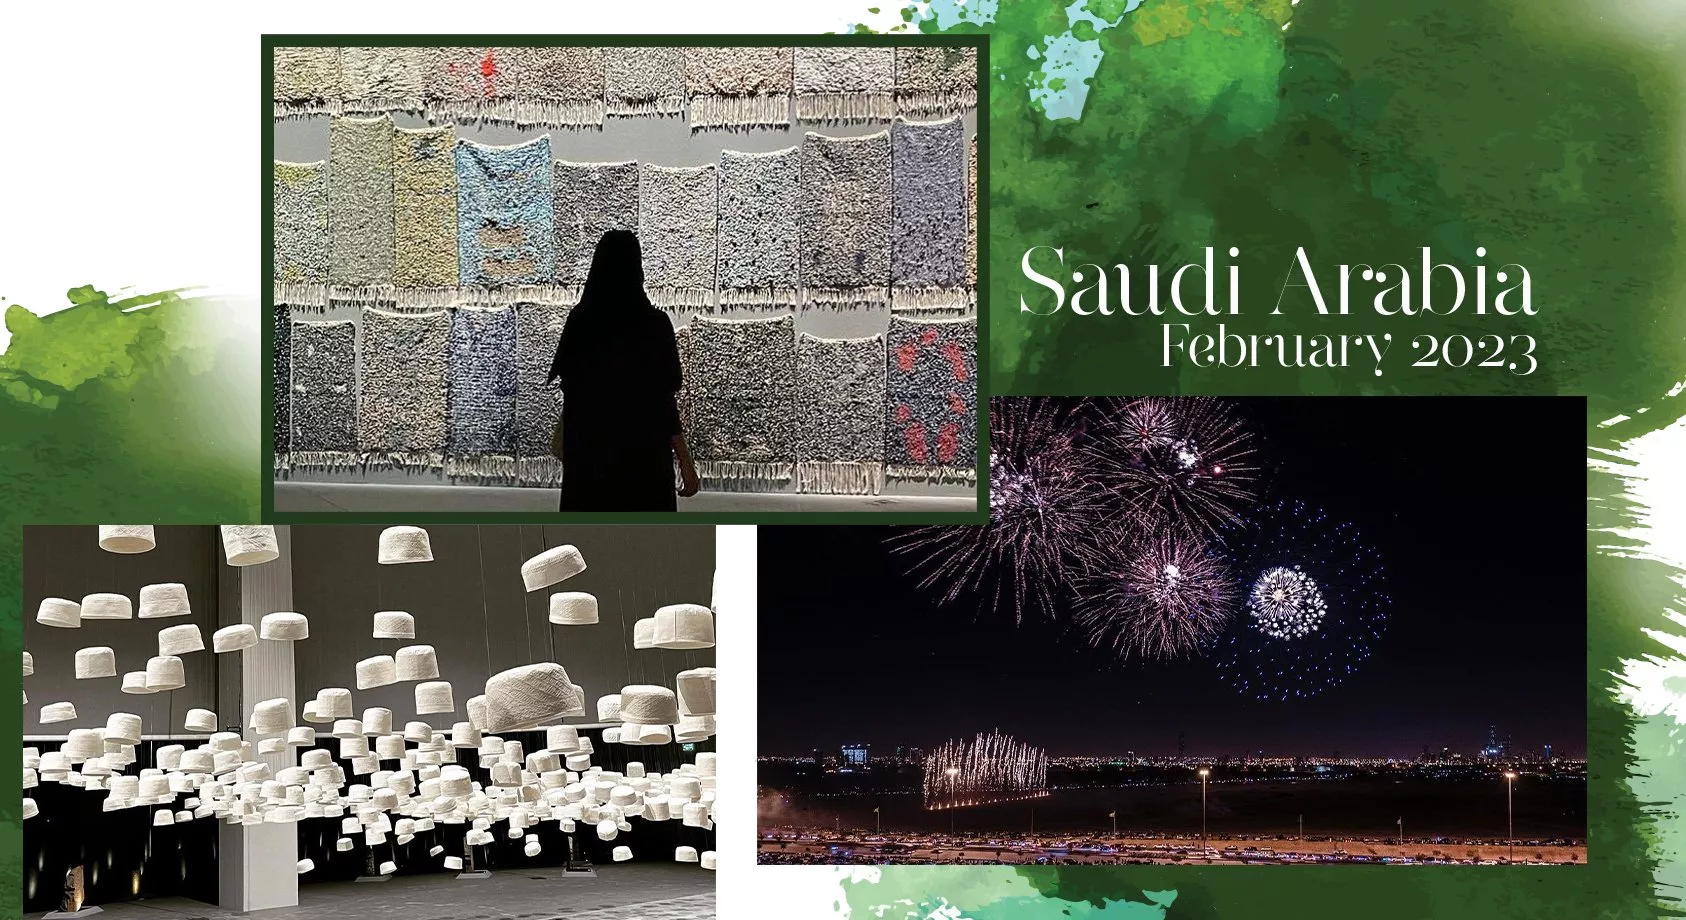 فعاليات ومهرجانات السعودية في فبراير 2023، لا تفوّت!